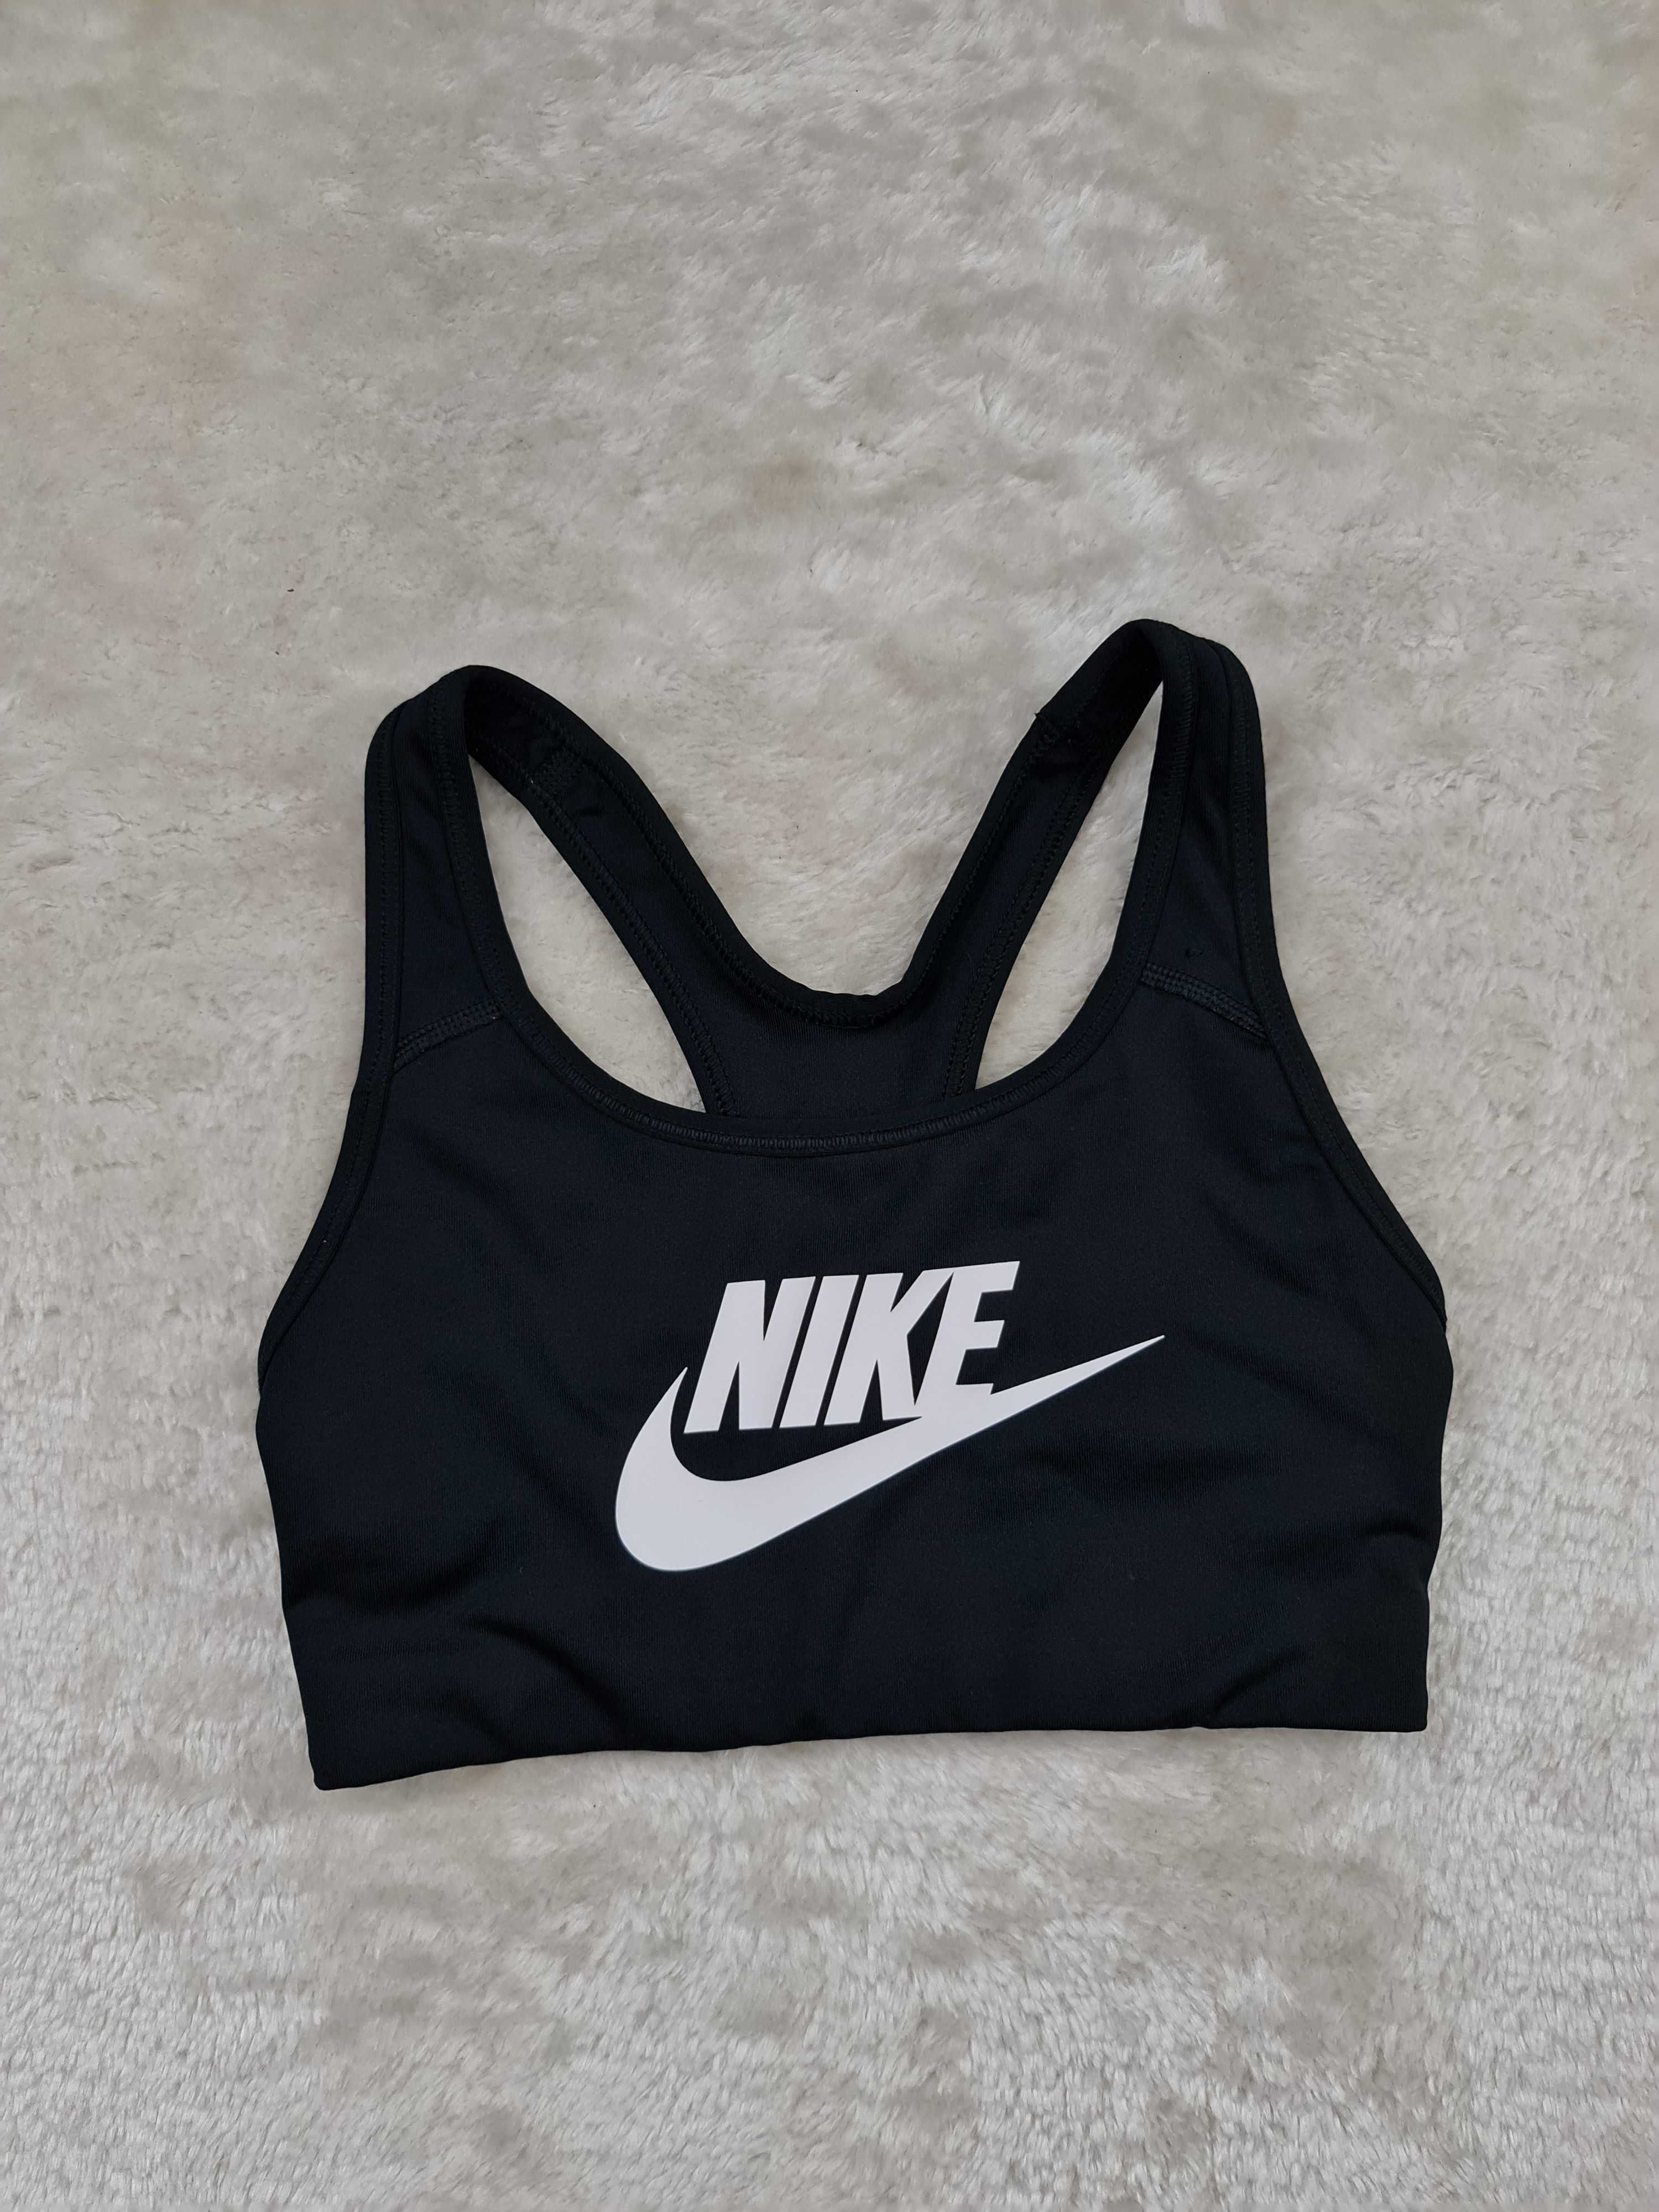 Koszulka Crop Top Nike Biustonosz , Stanik Sportowy Swoosh Rozmiar XS